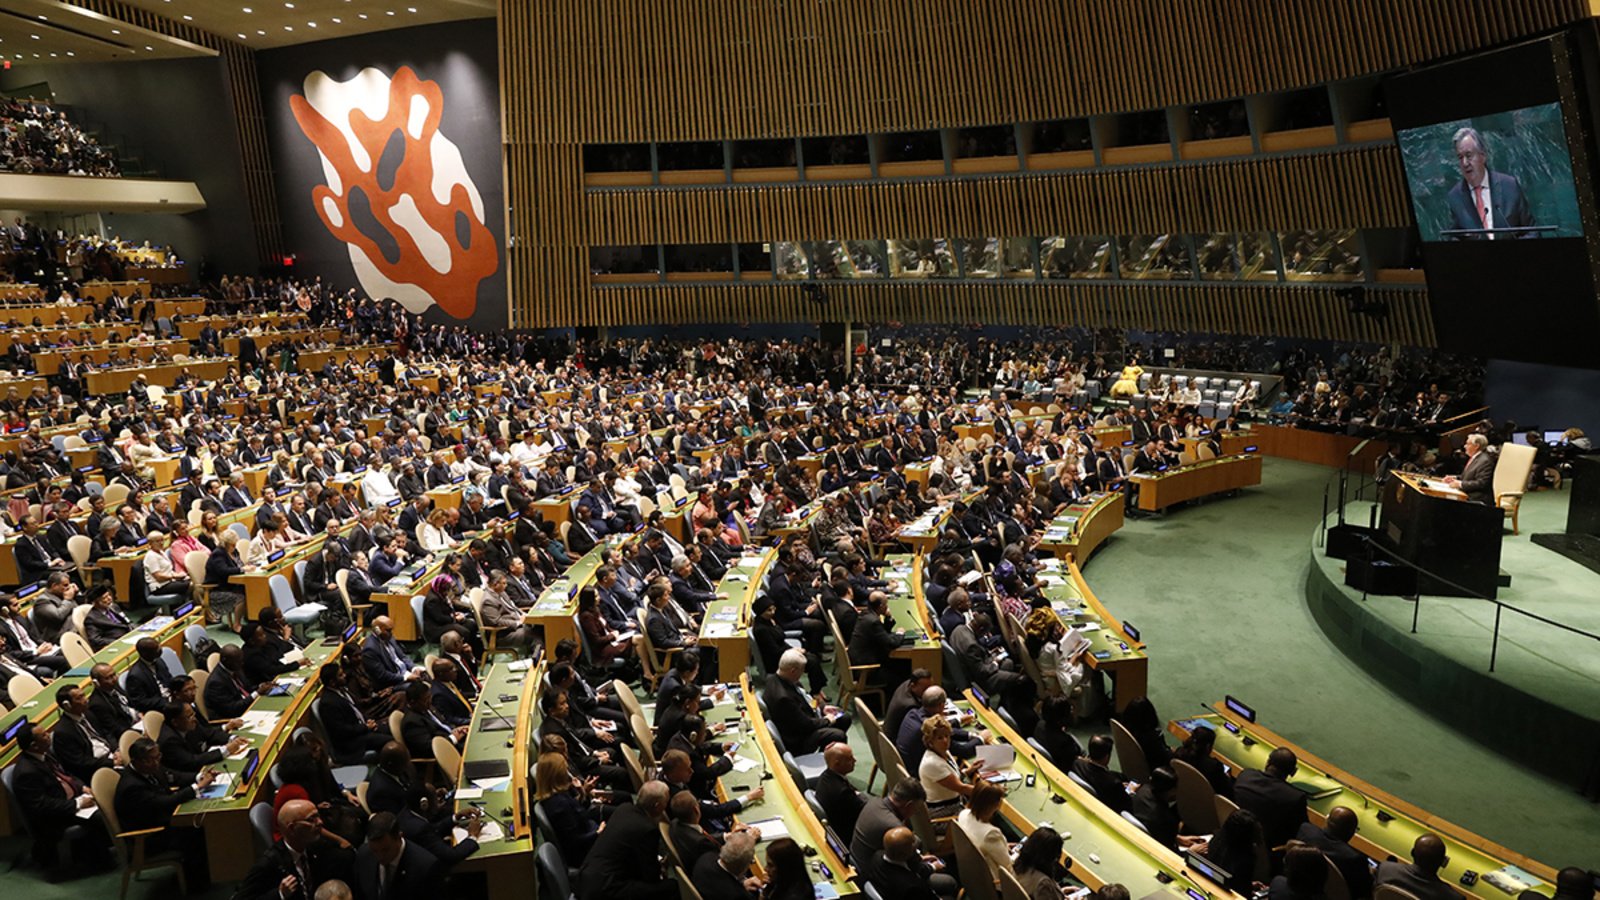 Belum Pernah Dihadiri Jokowi Langsung, Ini 6 Fakta Sidang Majelis Umum PBB